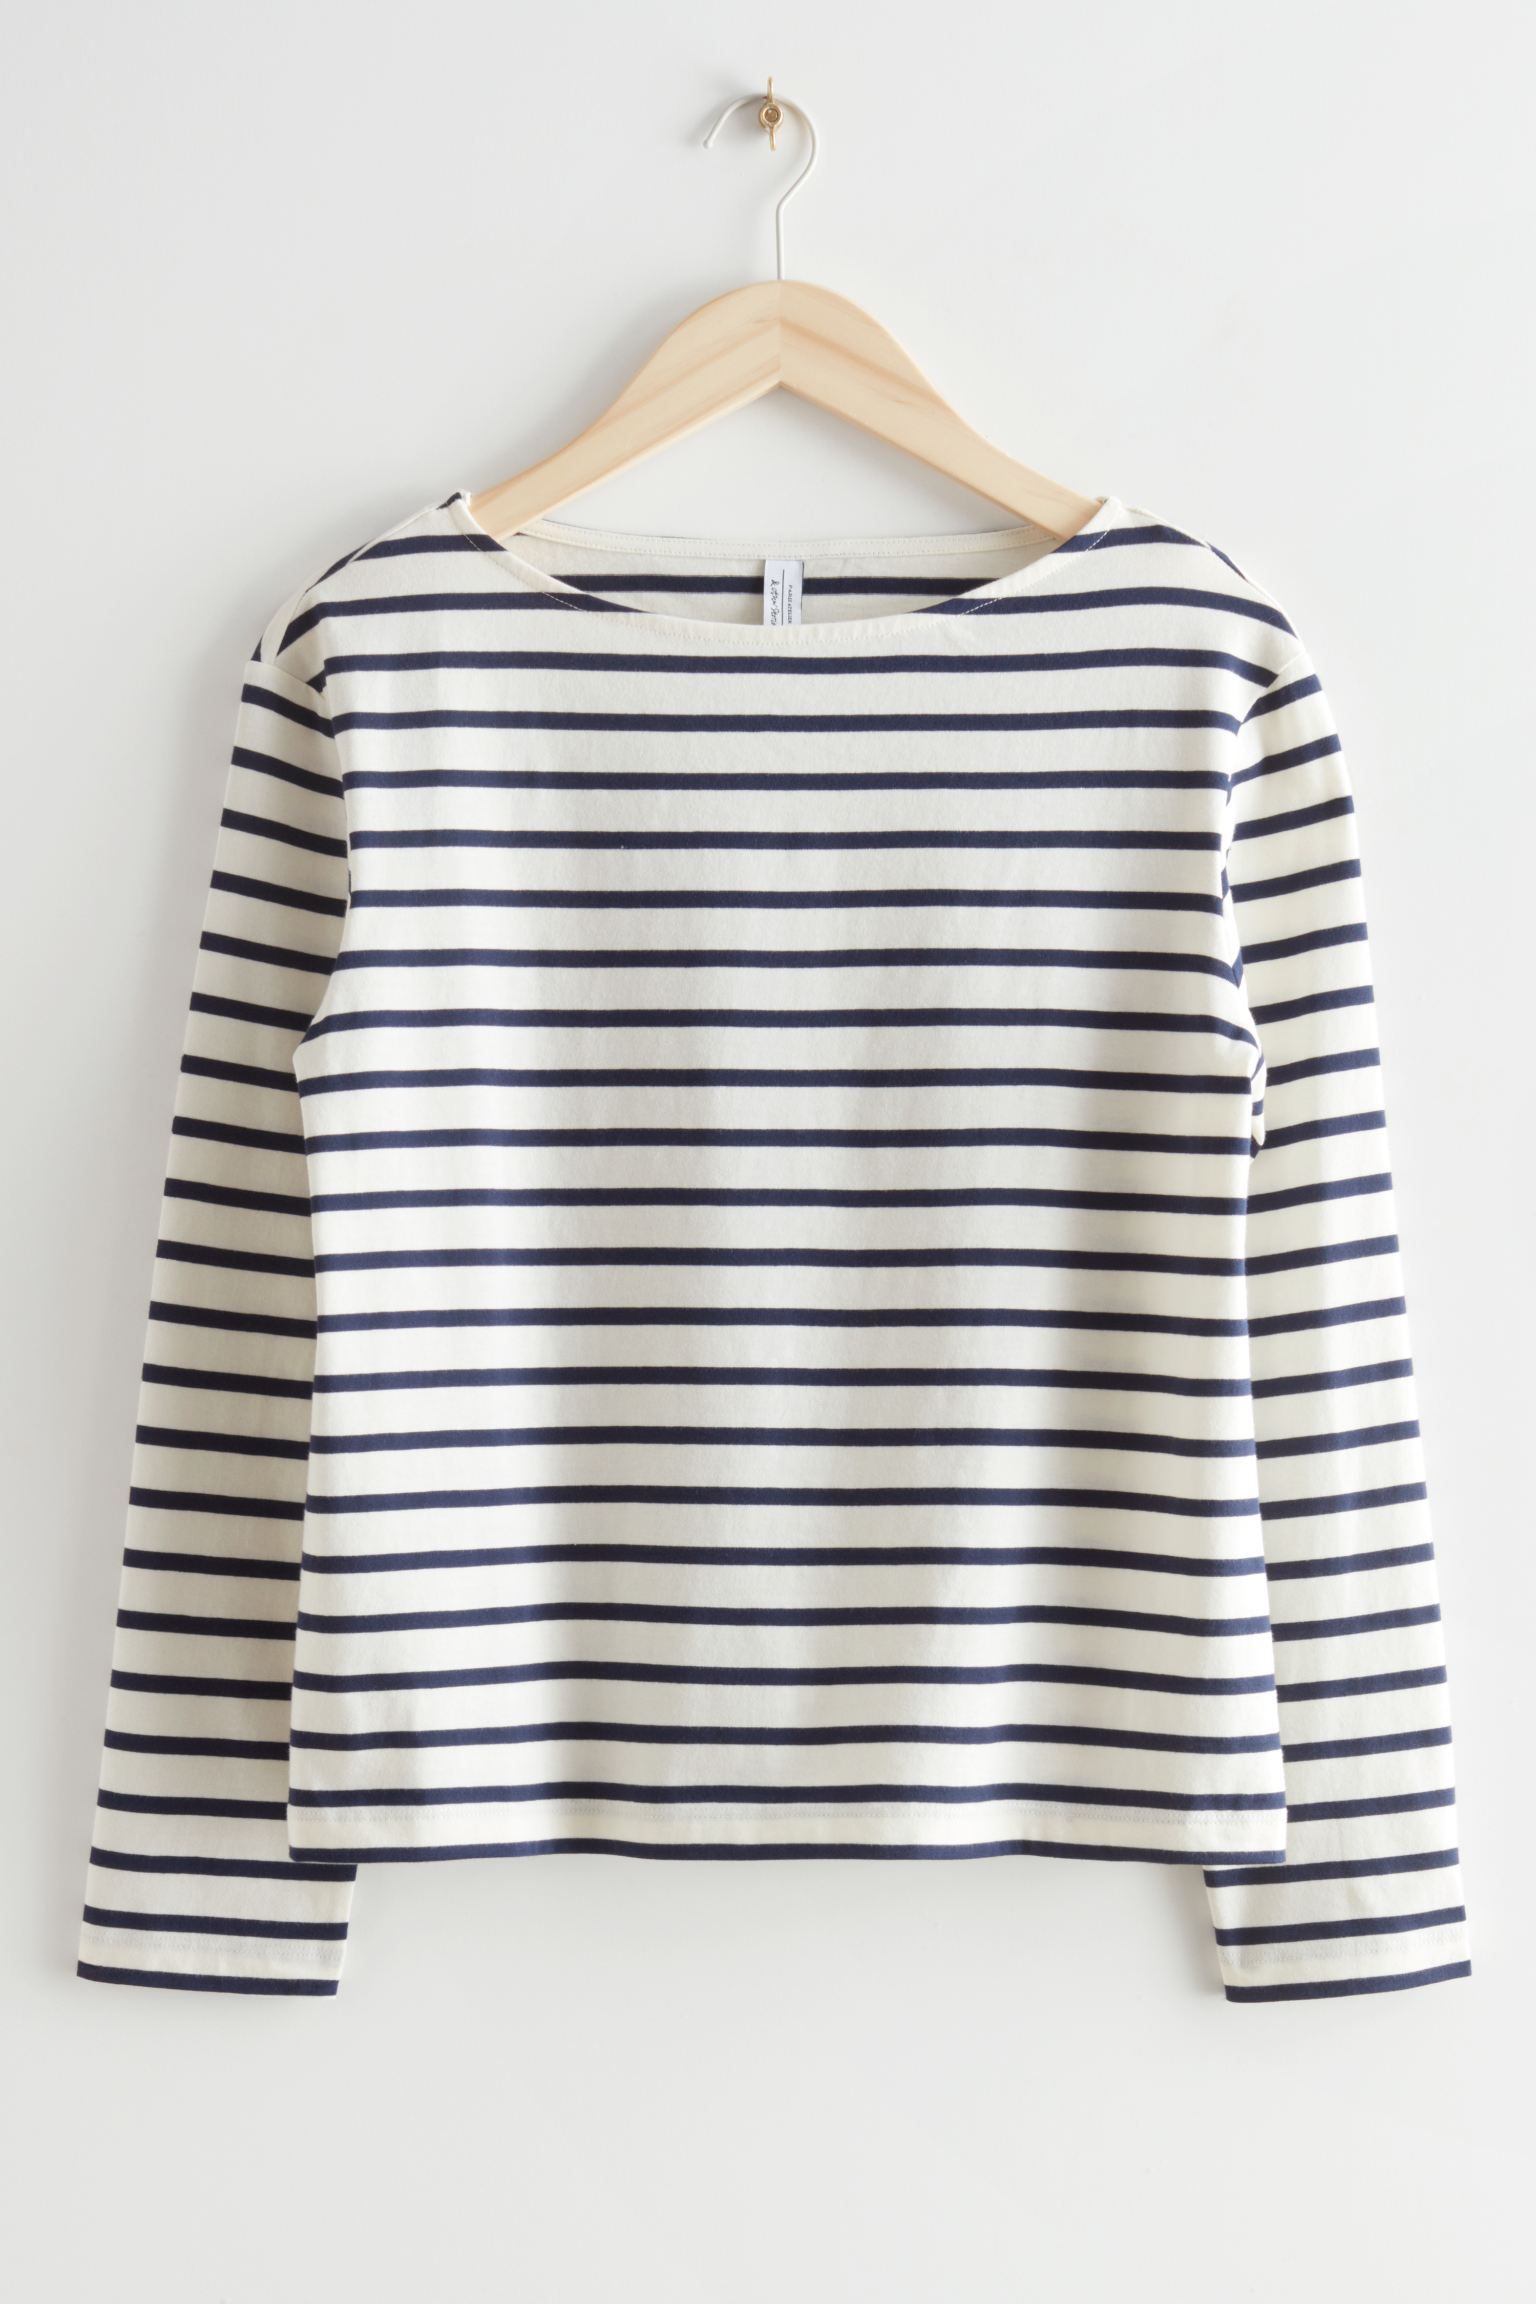 Лонгслив & Other Stories Breton Stripe, черный футболка твоё салатовая в полоску 46 размер